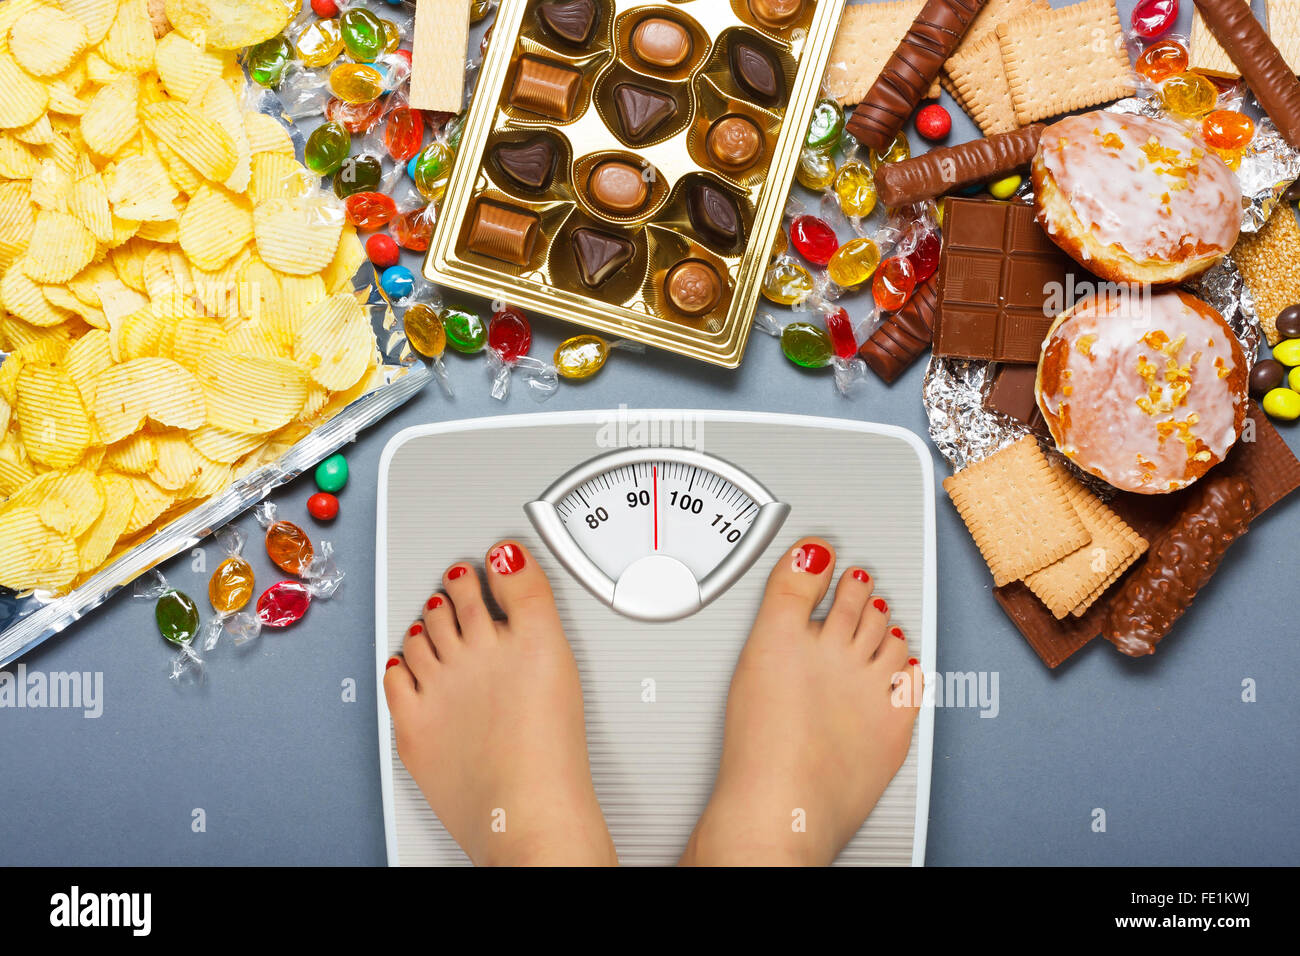 Las dietas malsanas, el sobrepeso. Foto de stock